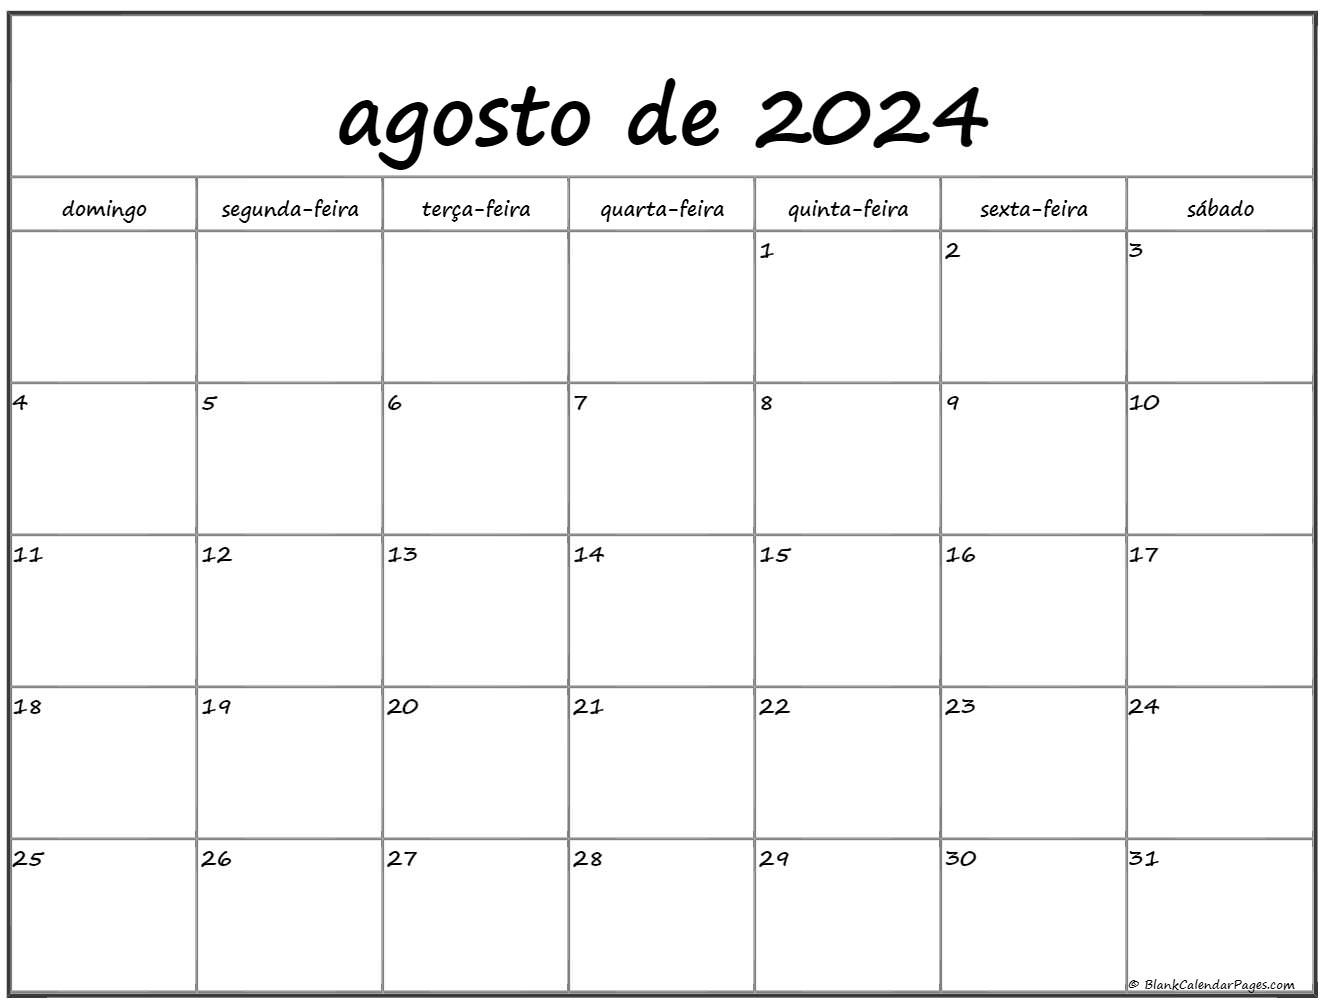 agosto de 2024 calendario grátis em português Calendario agosto